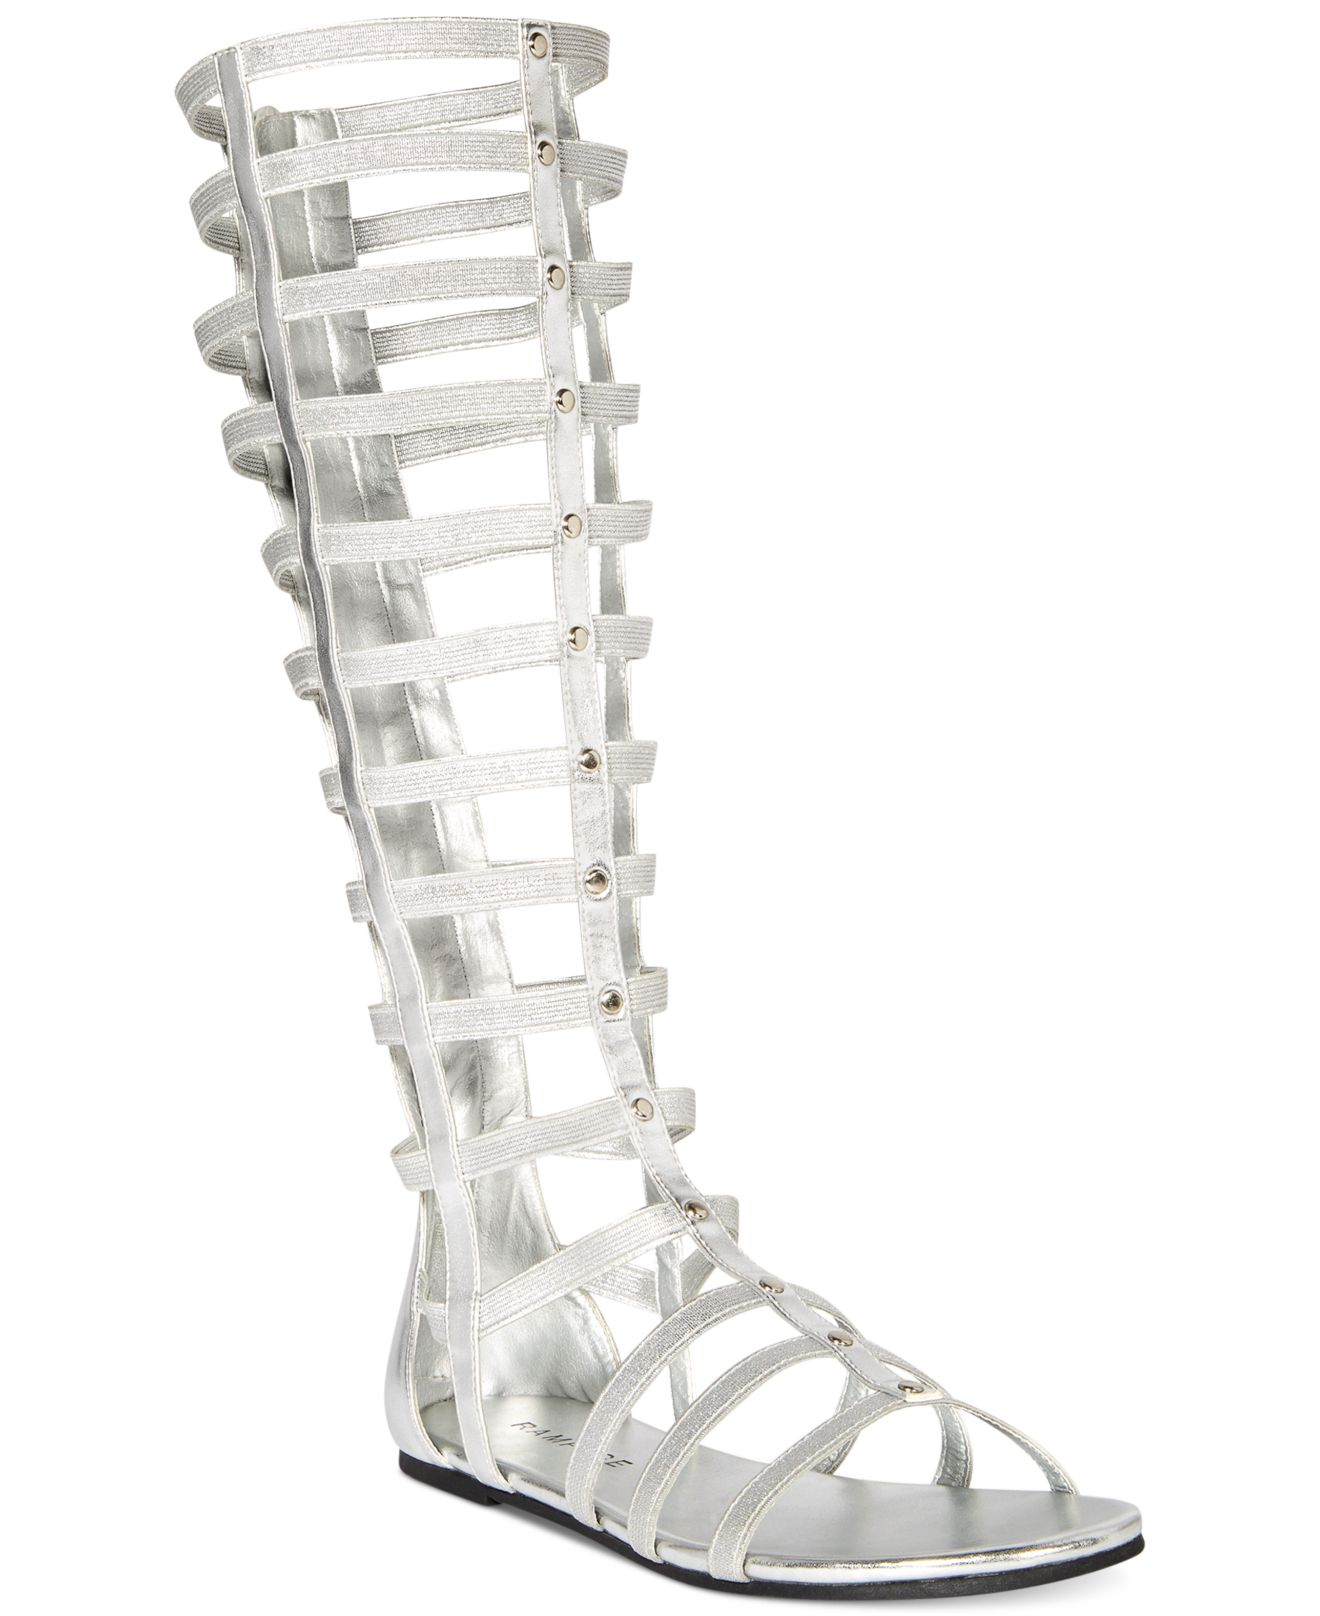 Art Schritte Zusammensetzen silver gladiator sandals Kolben Anfällig ...